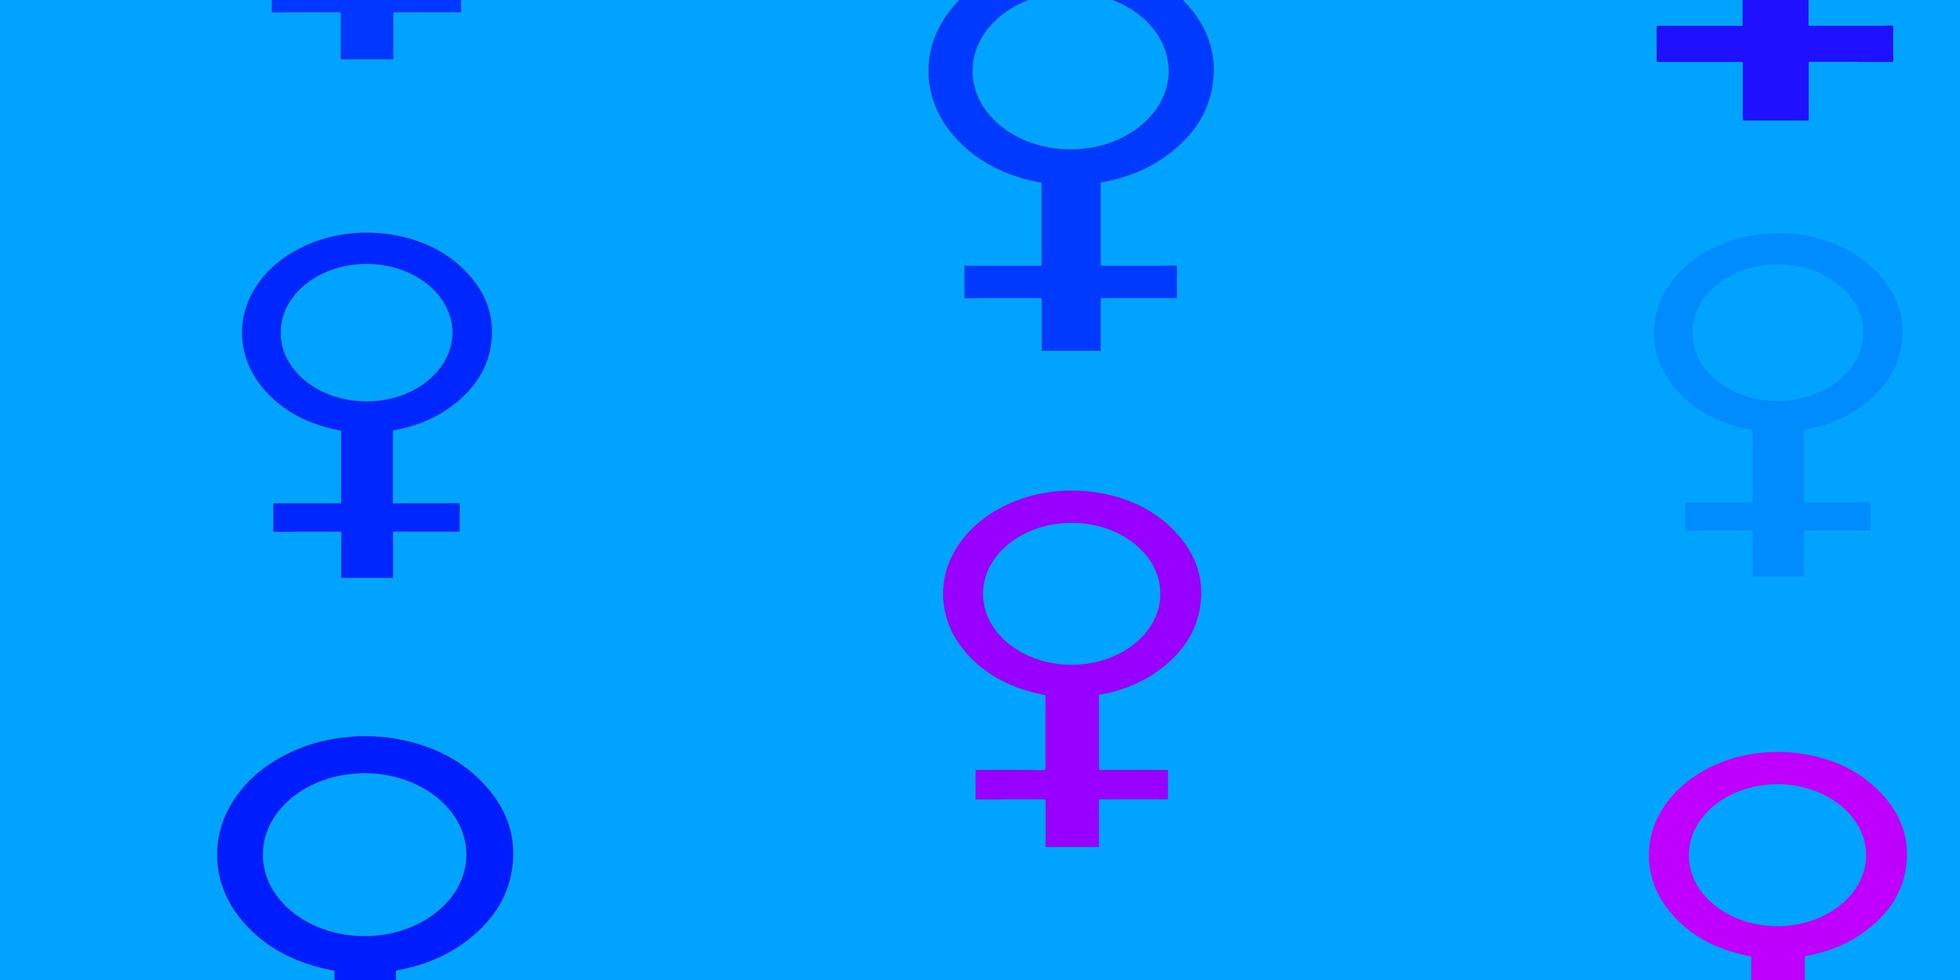 ljusrosa, blå vektormönster med feminismelement. vektor